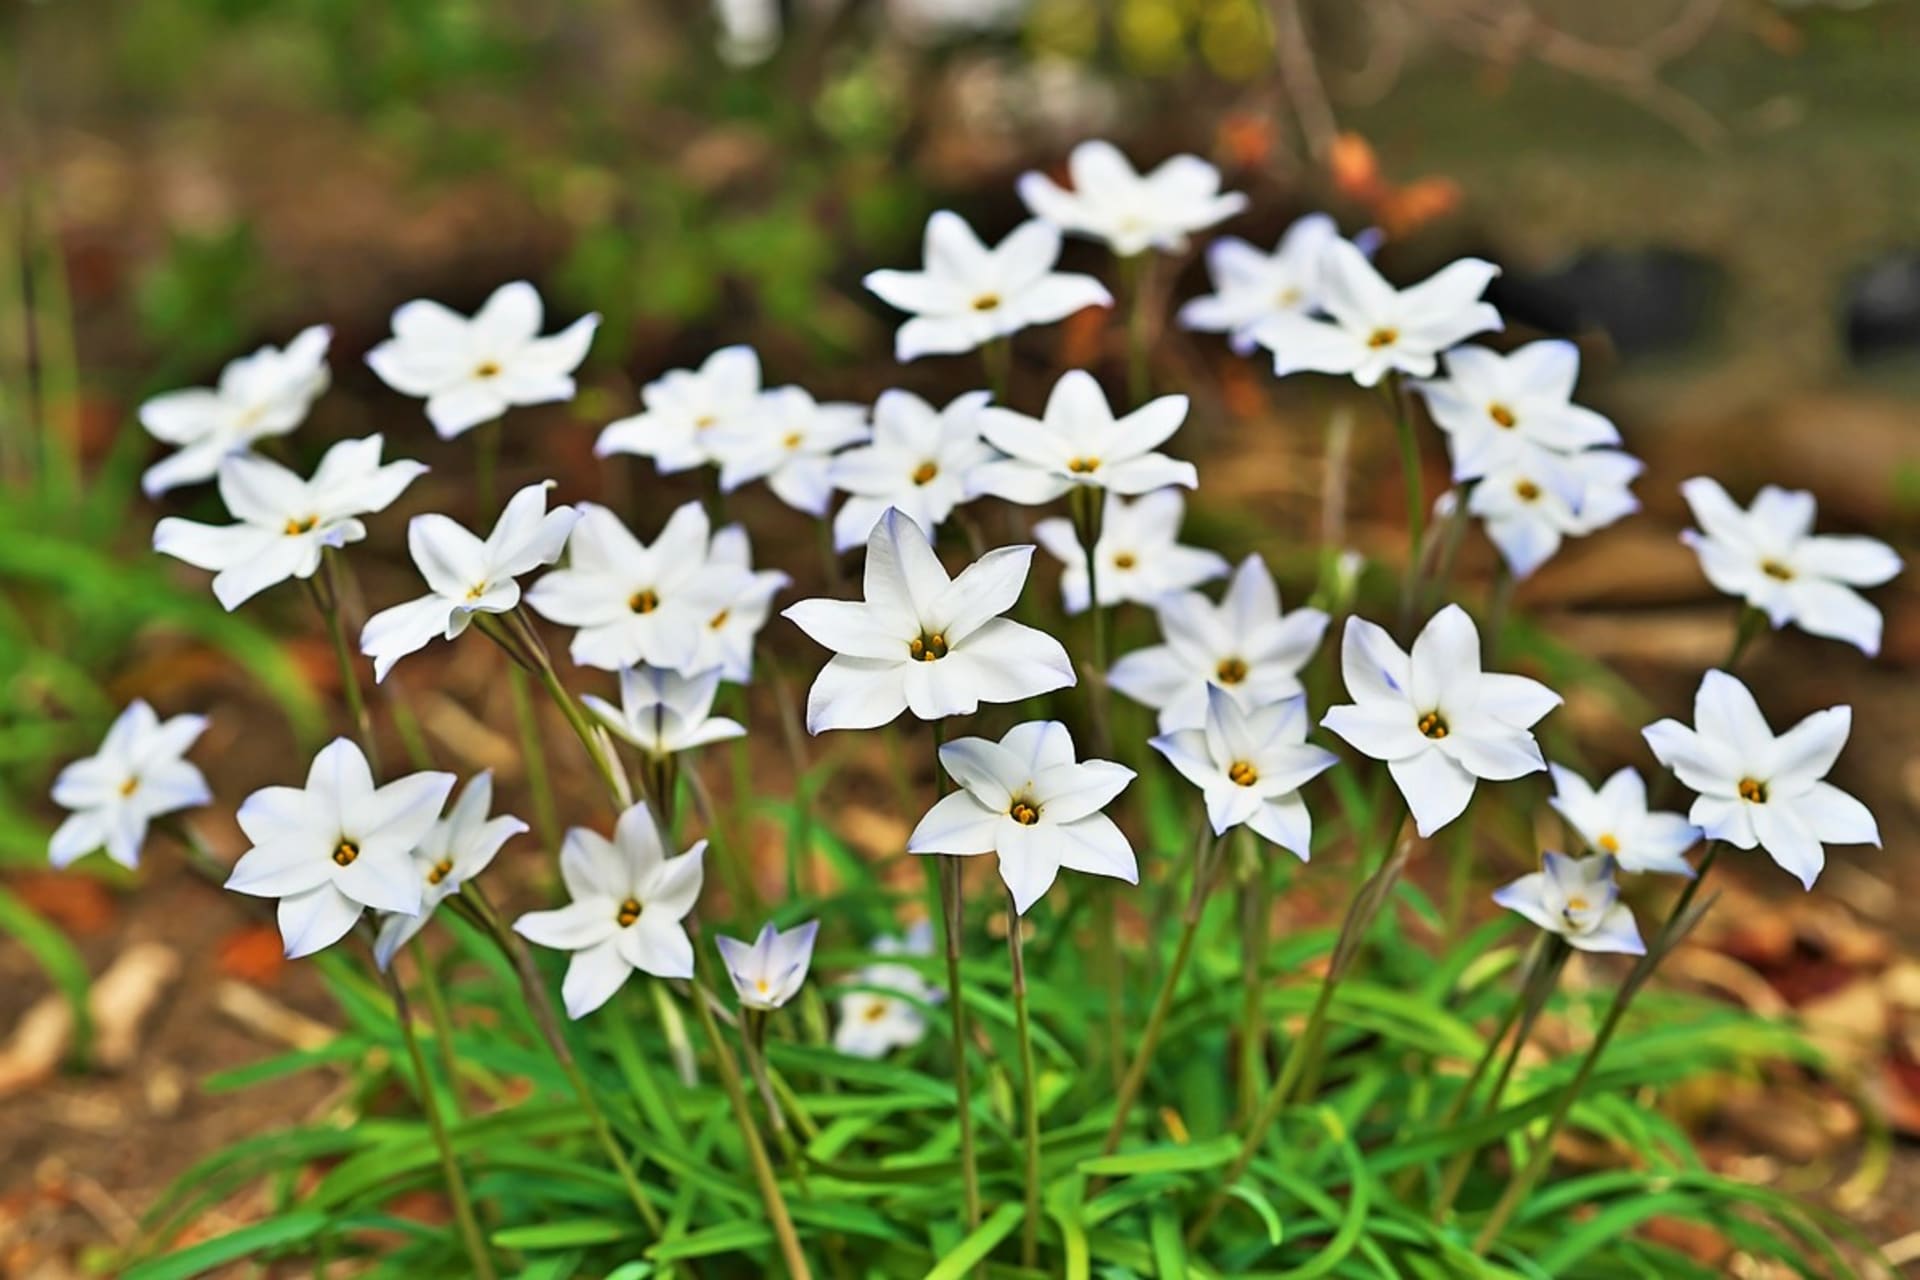 Ifeion jednokvětý (Ipheion uniflorum): Trvá to sice dva roky, než vytvoří silný trs, ale potom nás každoročně bude těšit svou příjemnou vůní a elegantním tvarem drobných květů.